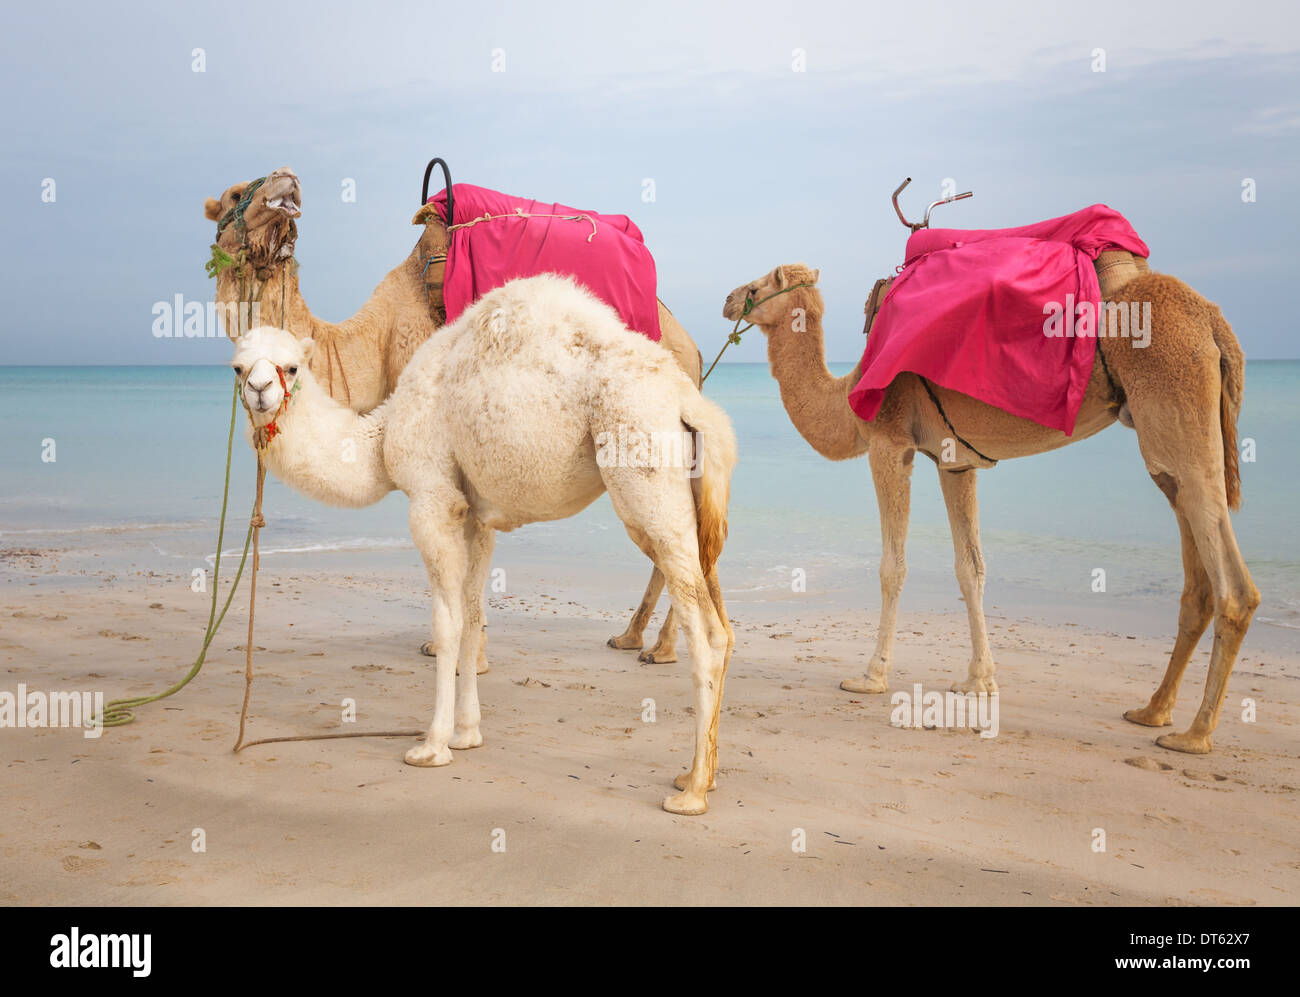 Deux chameaux et dromadaires bébé blanc sur la plage en Tunisie Banque D'Images